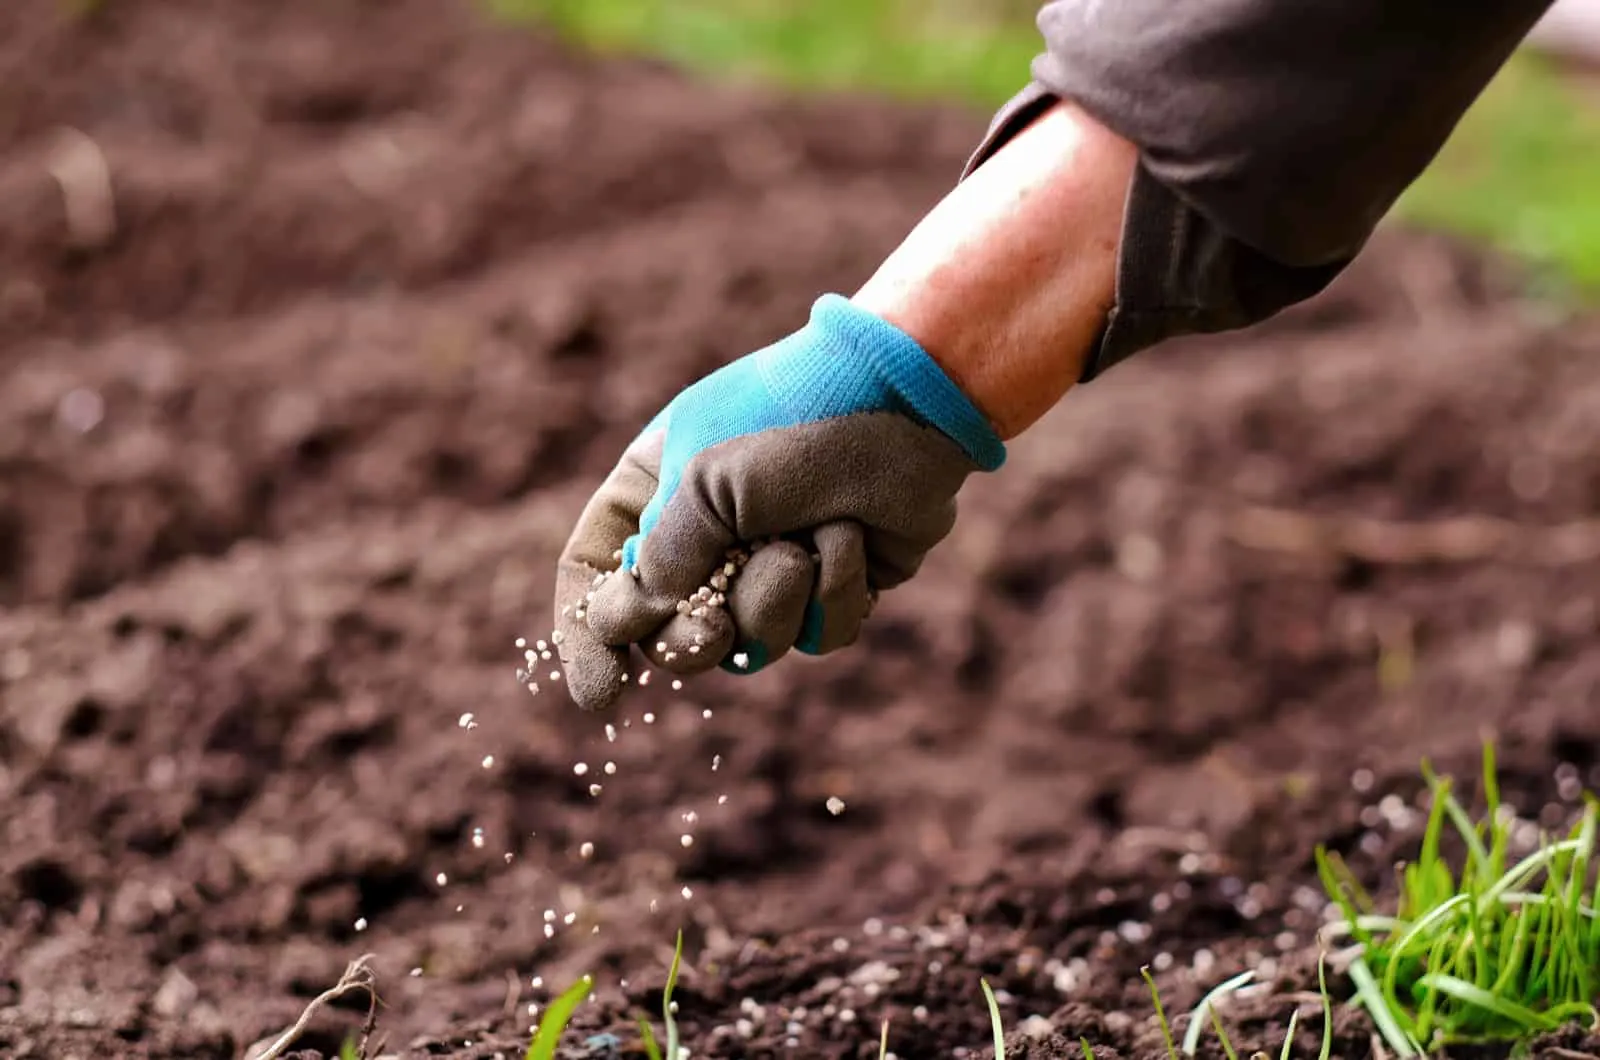 hand applying fertilizer on soil